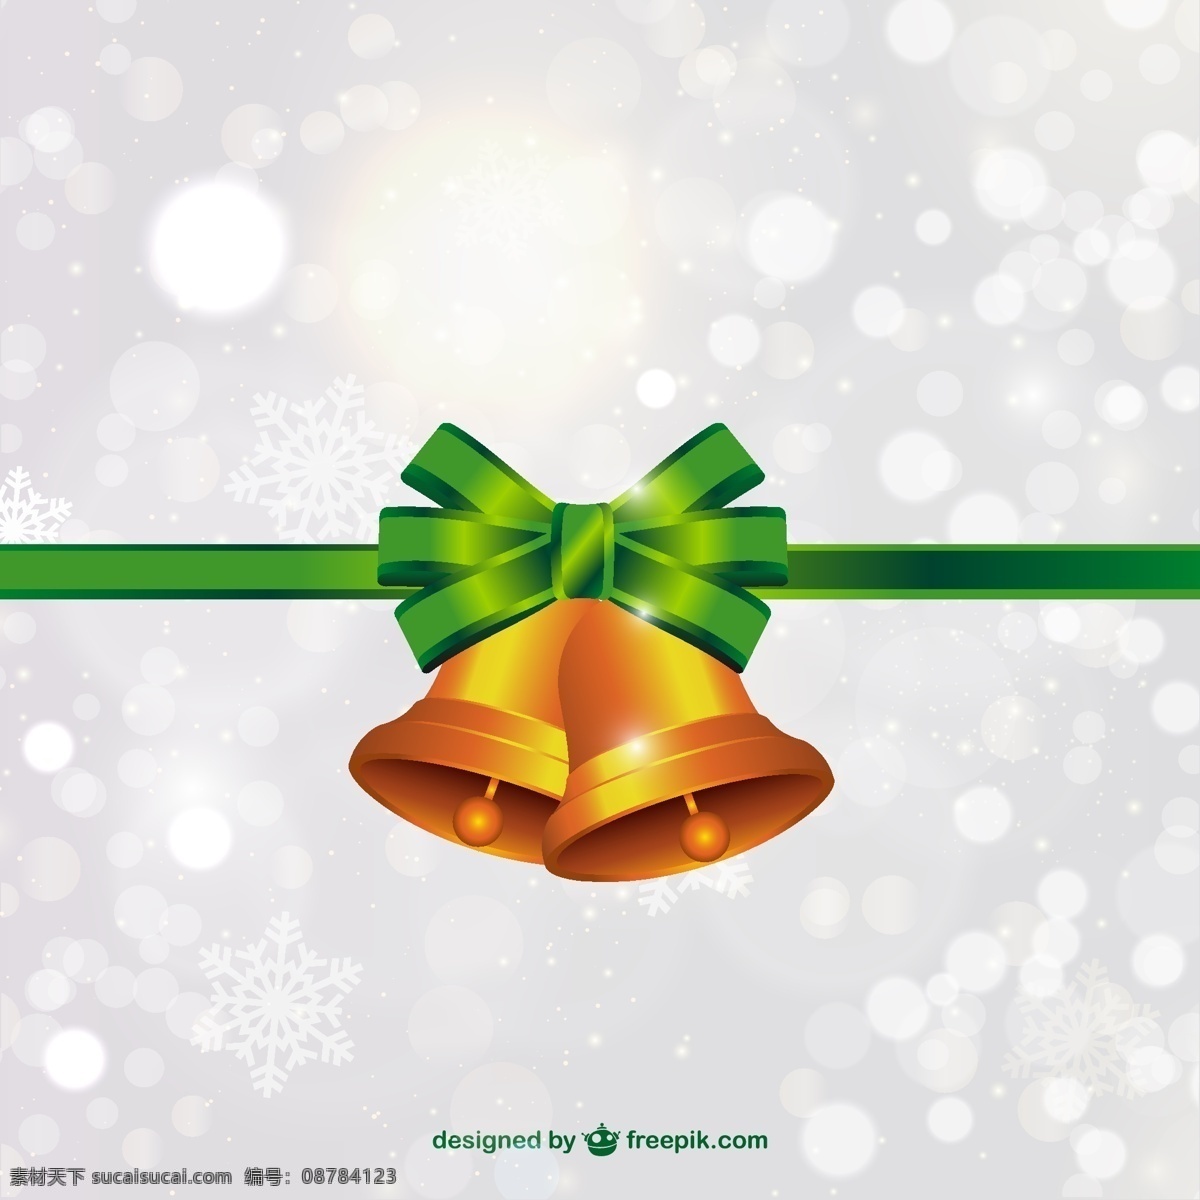 圣诞 钟声 绿色 蝴蝶结 矢量 背景 饰品 快乐 圣诞节 装饰品 圣诞快乐 问候